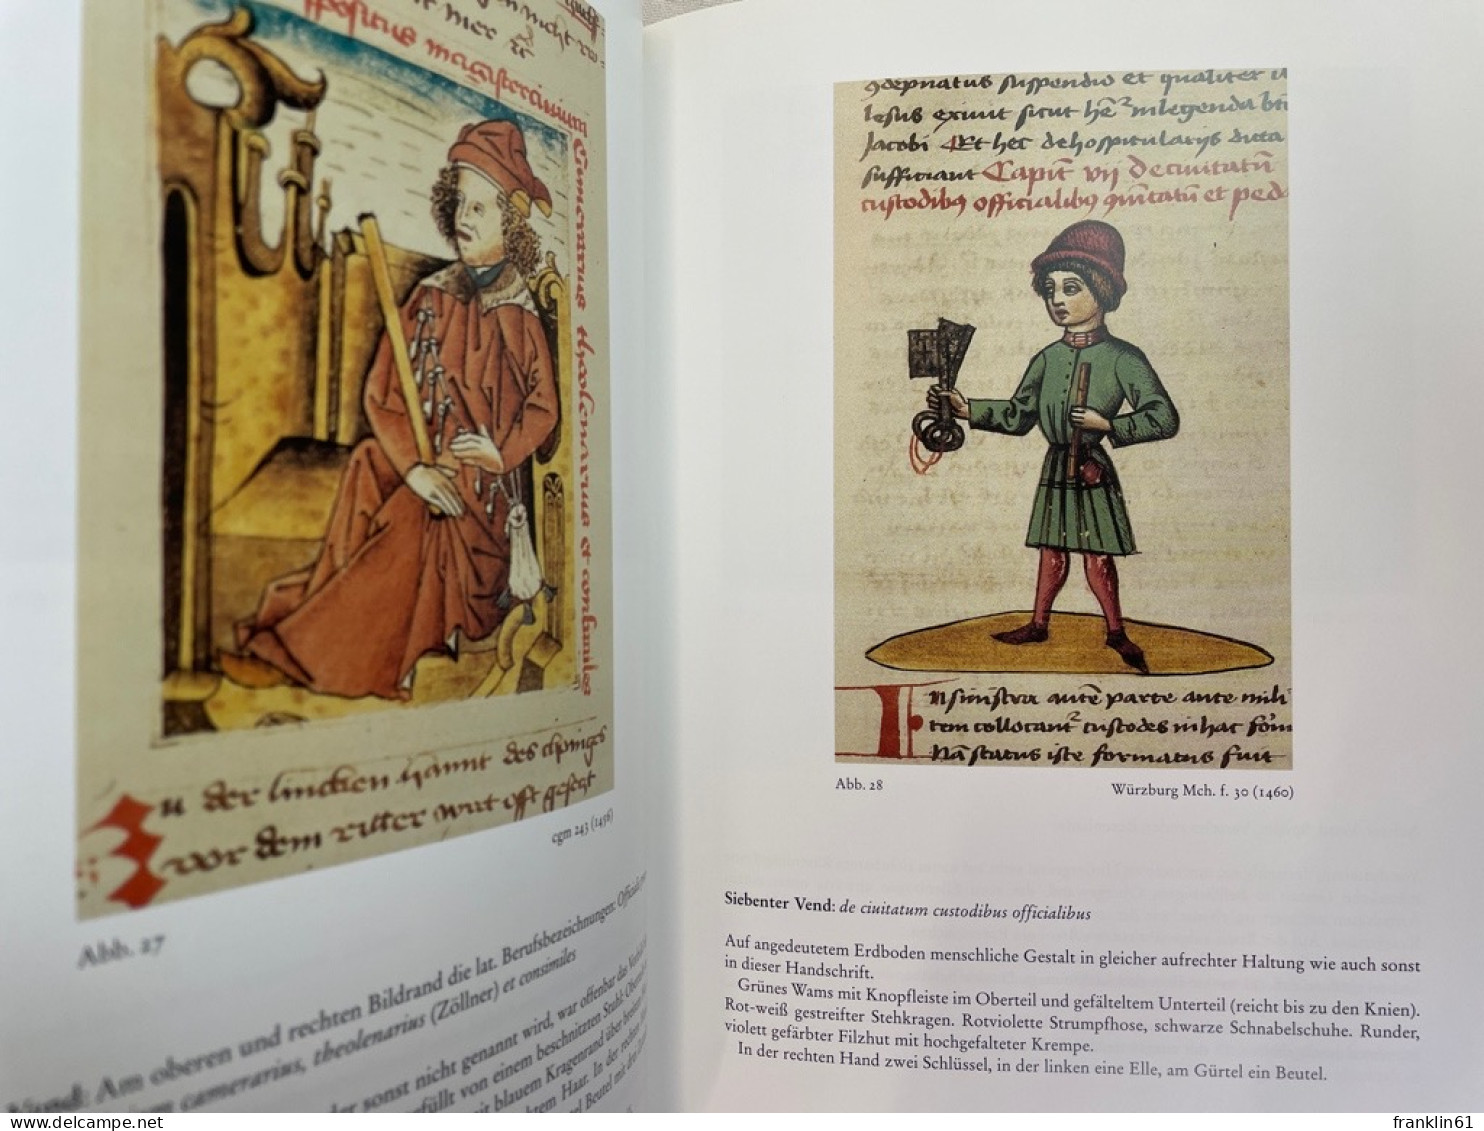 Bauern, Handwerker und Bürger im Schachzabelbuch : mittelalterliche Ständegliederung nach Jacobus de Cessoli